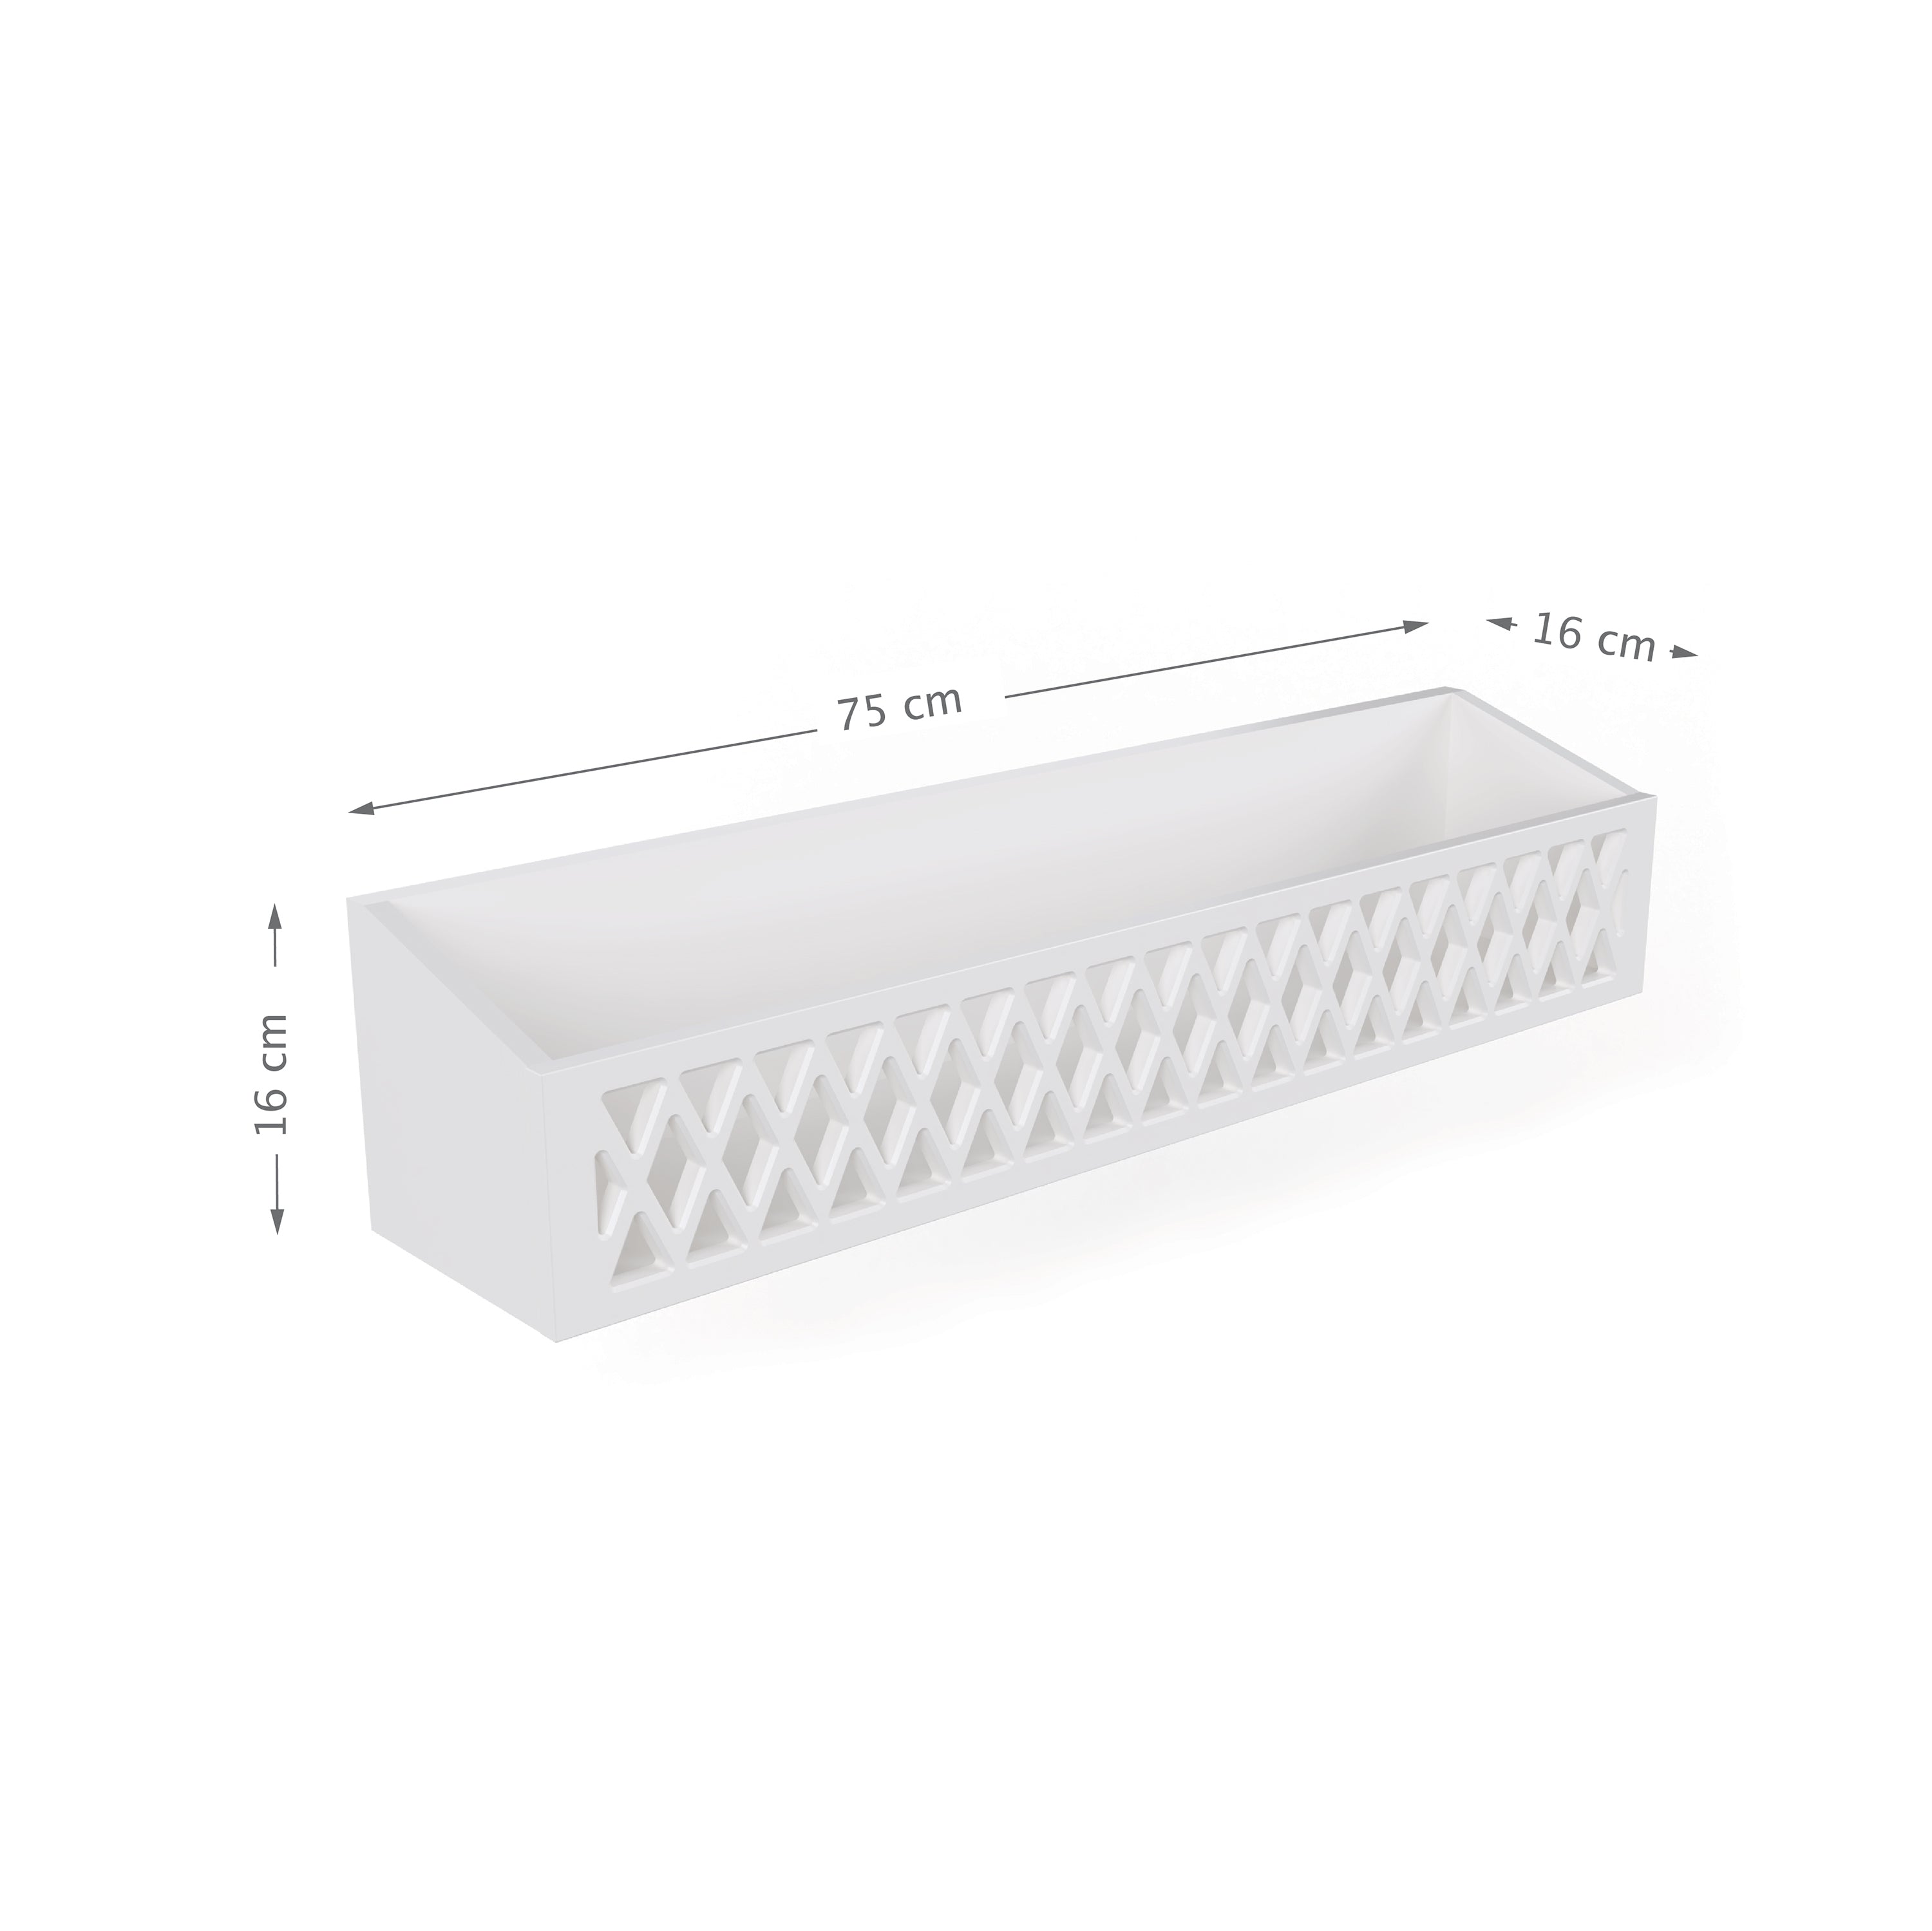 Harlequin Shelf, FSC Mix - White